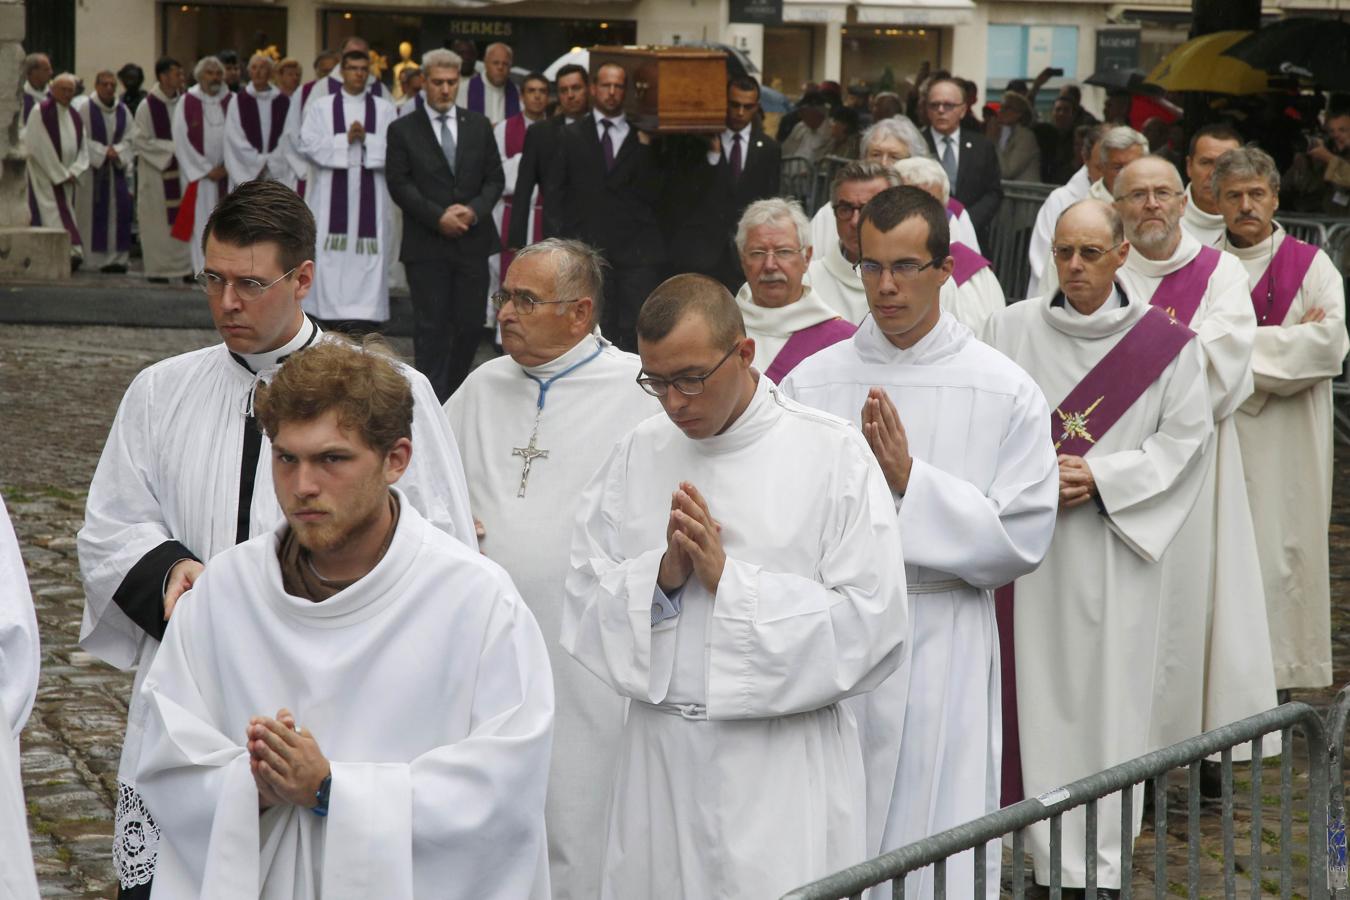 Más de dos millares de personas han acudido a la catedral de Ruan para dar un último adiós al sacerdote Jacques Hamel